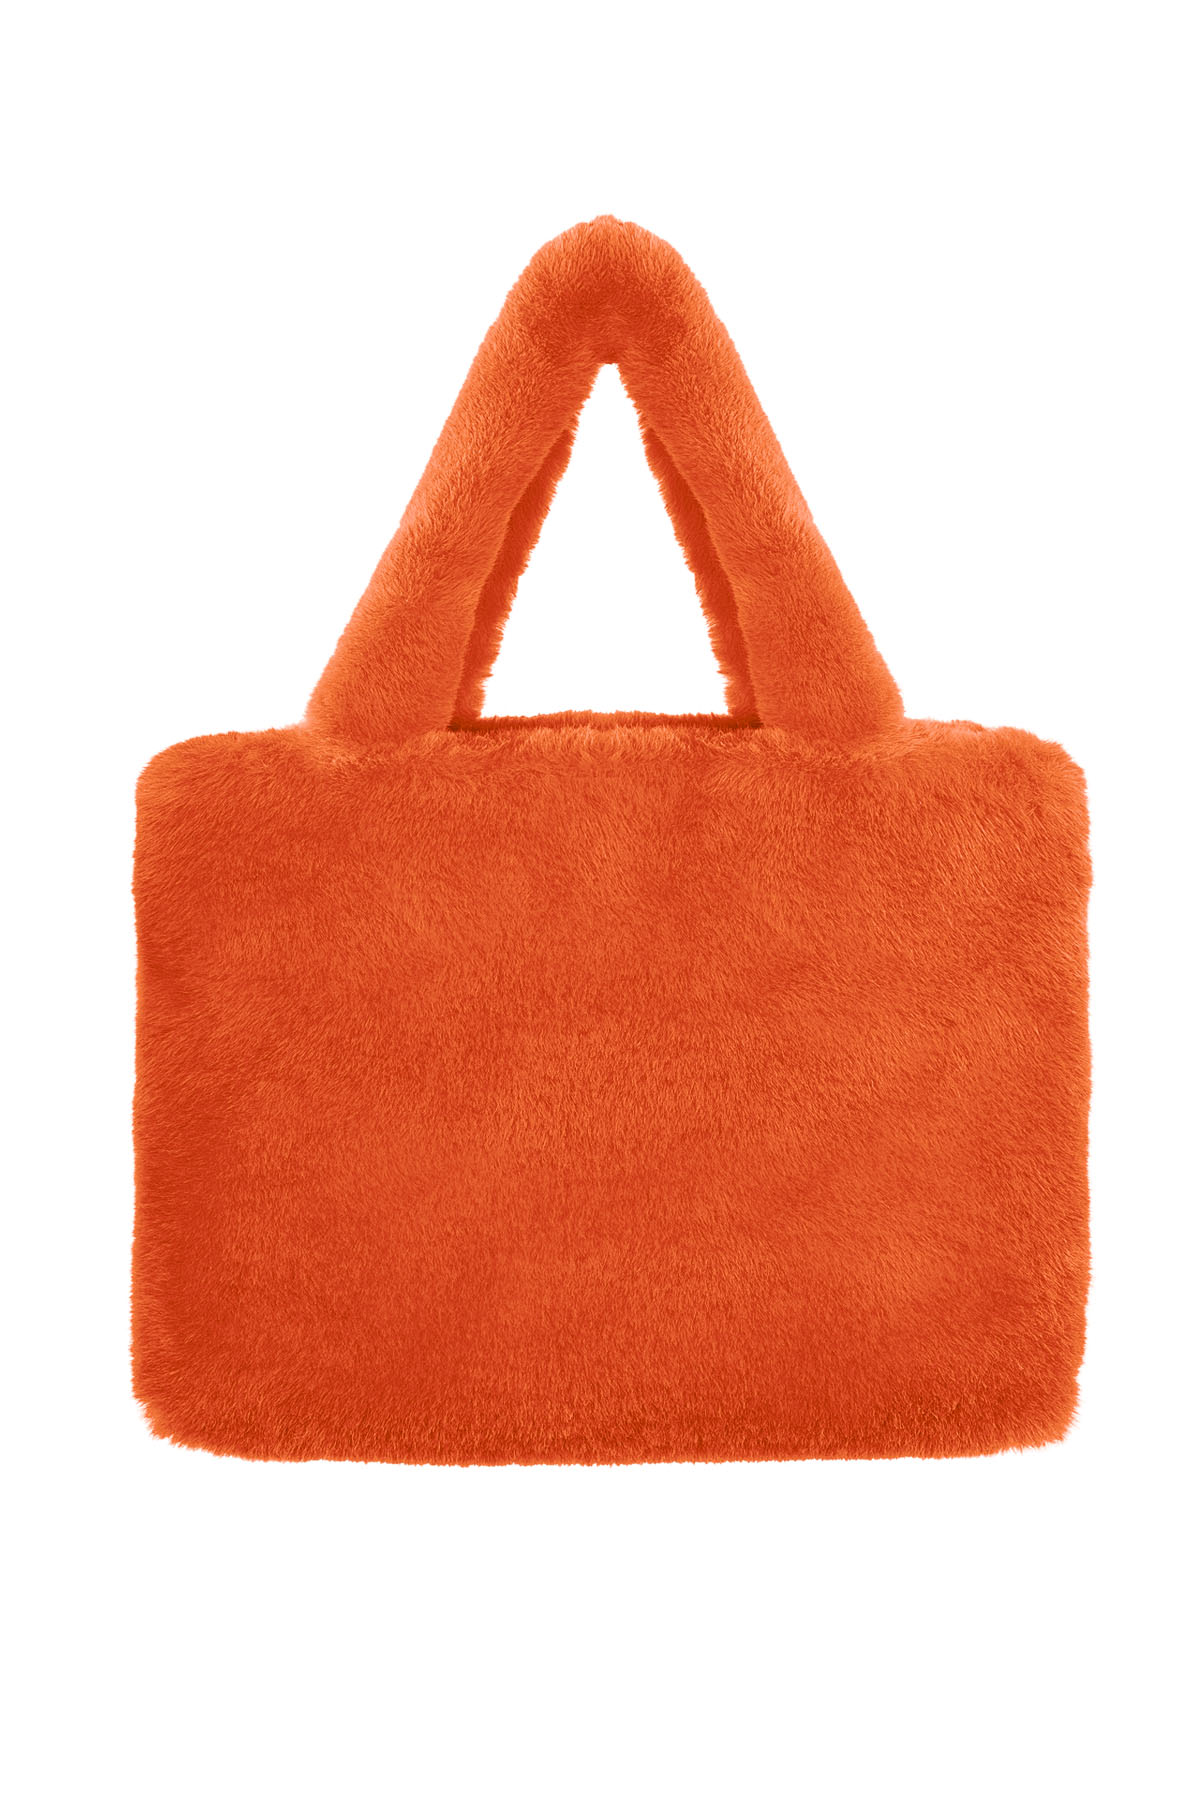 Suni kürklü şehir çantası büyük boy - turuncu h5 